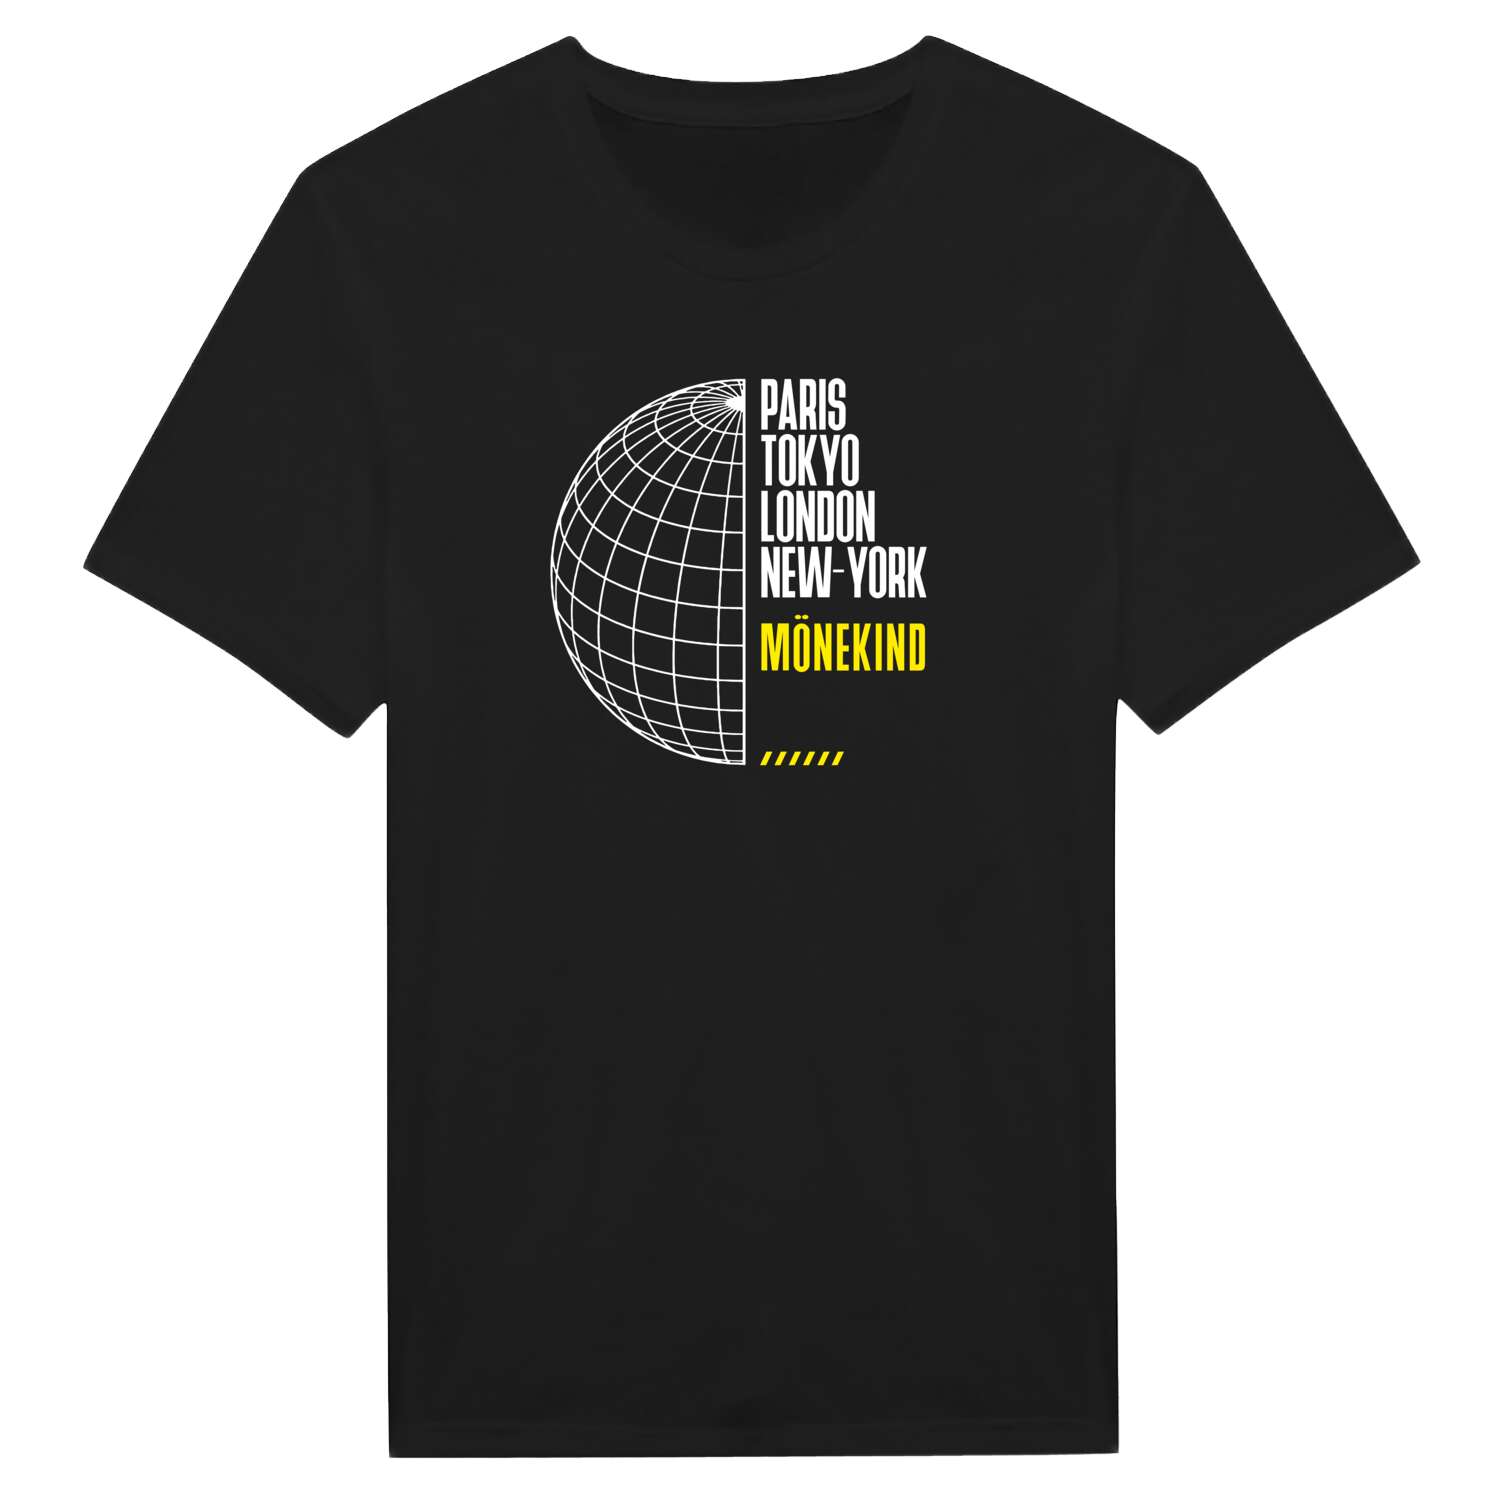 Mönekind T-Shirt »Paris Tokyo London«